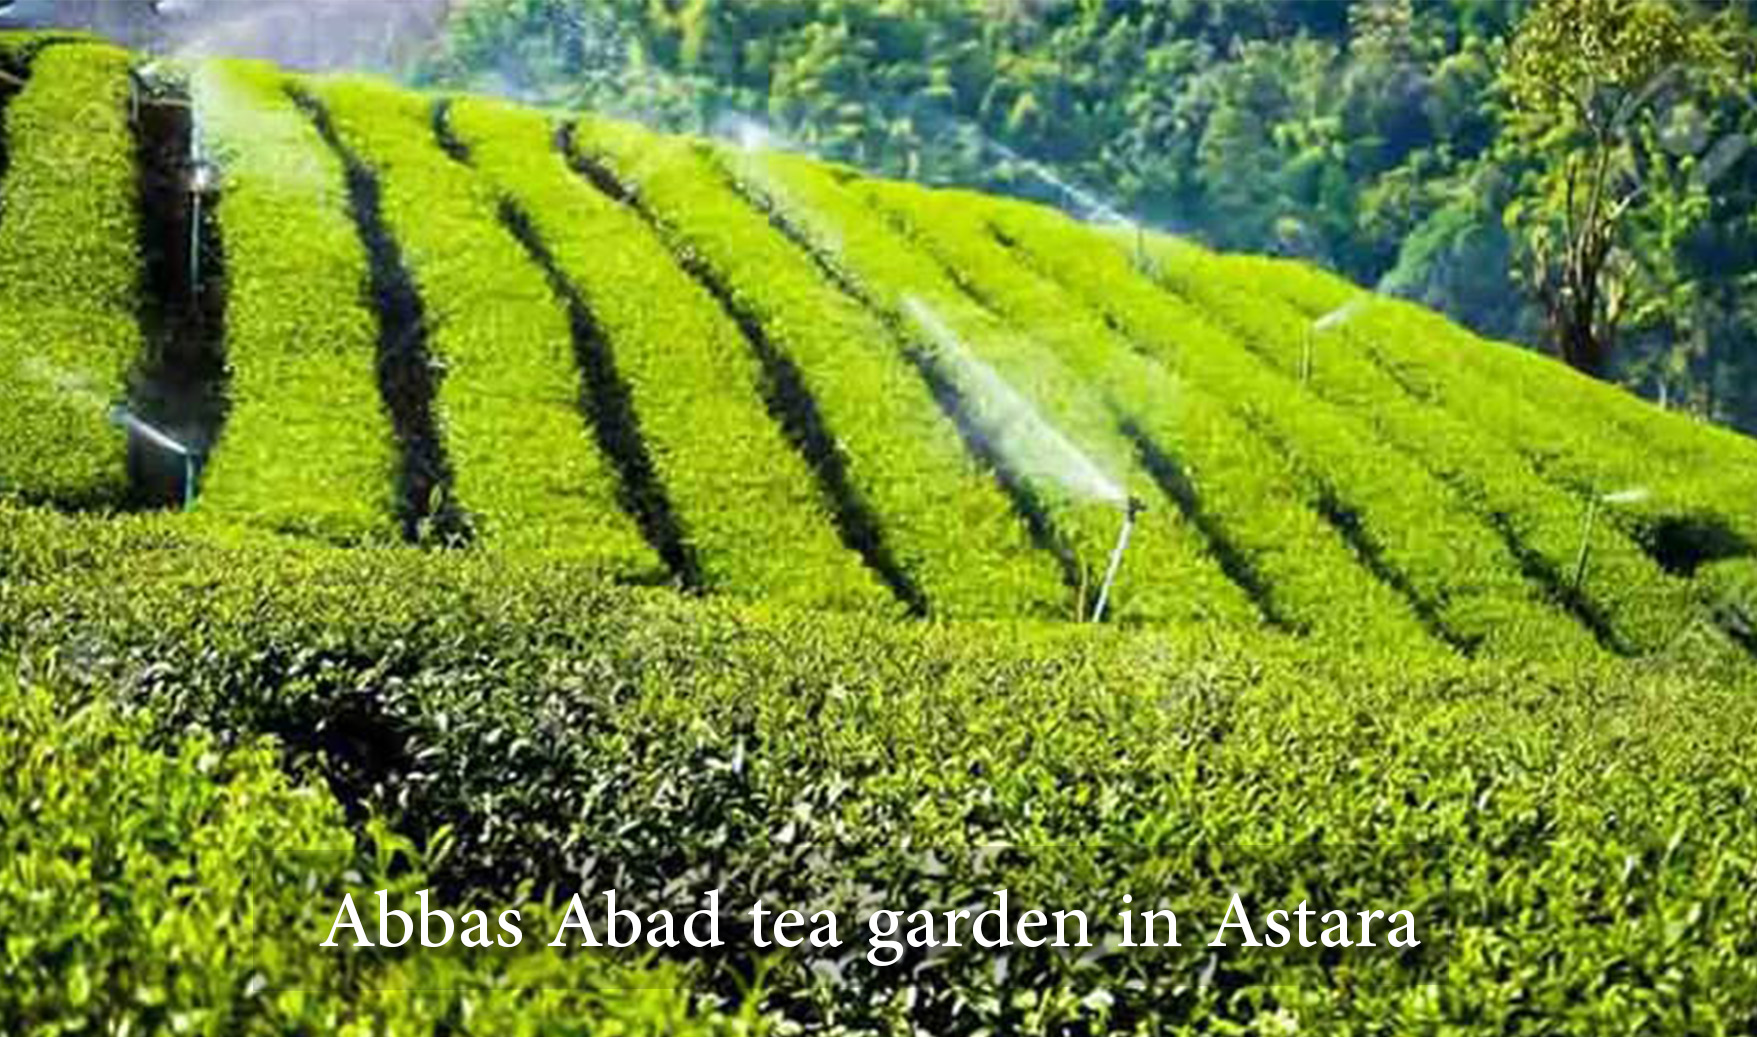 Abbas Abad tea garden in Astara